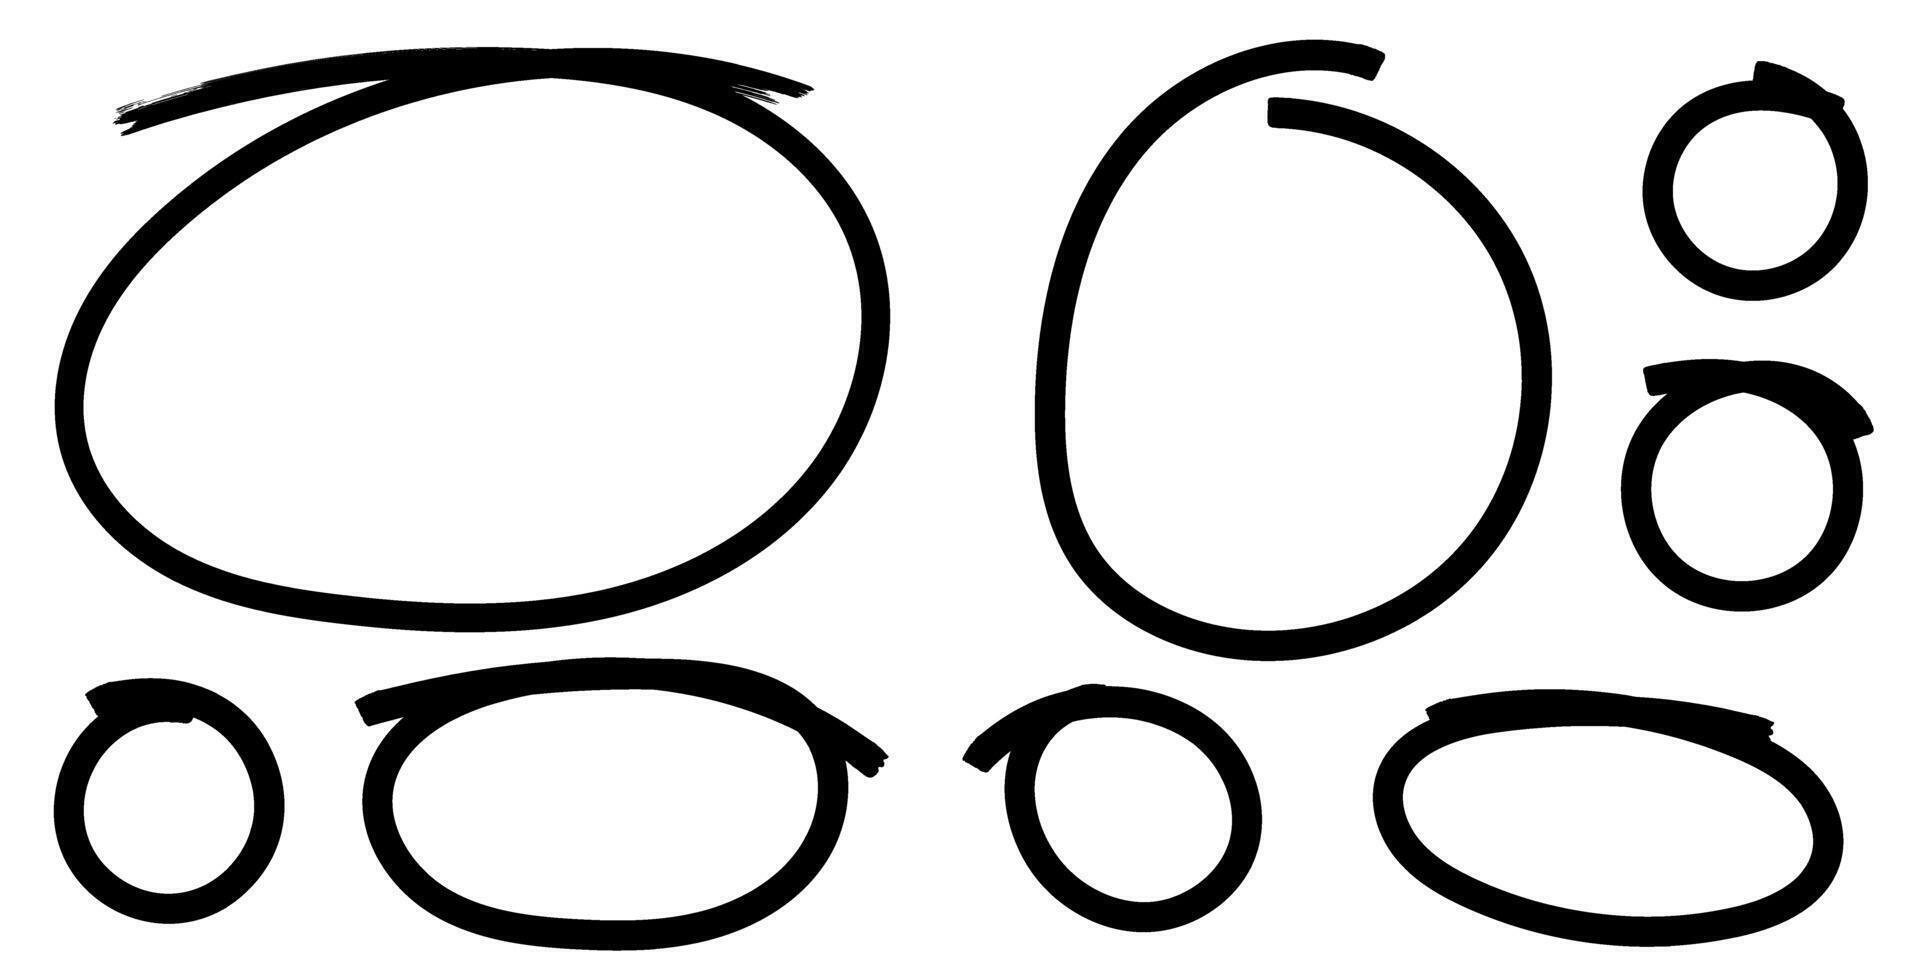 schwarz Oval, Kreis, Markieren einstellen Element. Hand gezeichnet Gekritzel runden Marker. Vektor Illustration